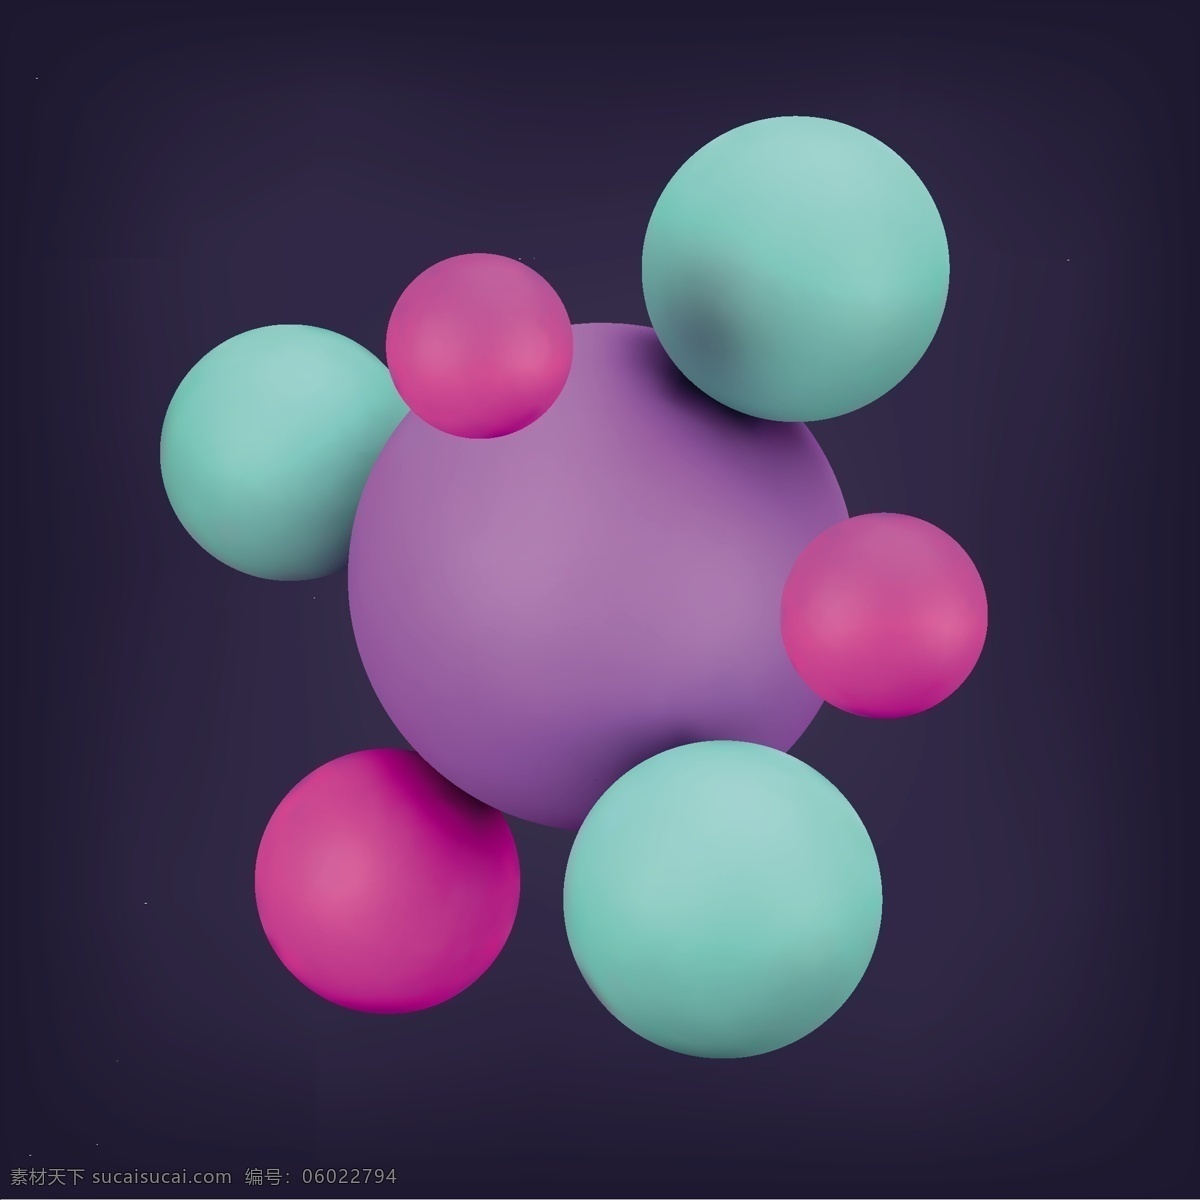 彩色 3d 球体 背景 矢量 立体 矢量图 其他矢量图